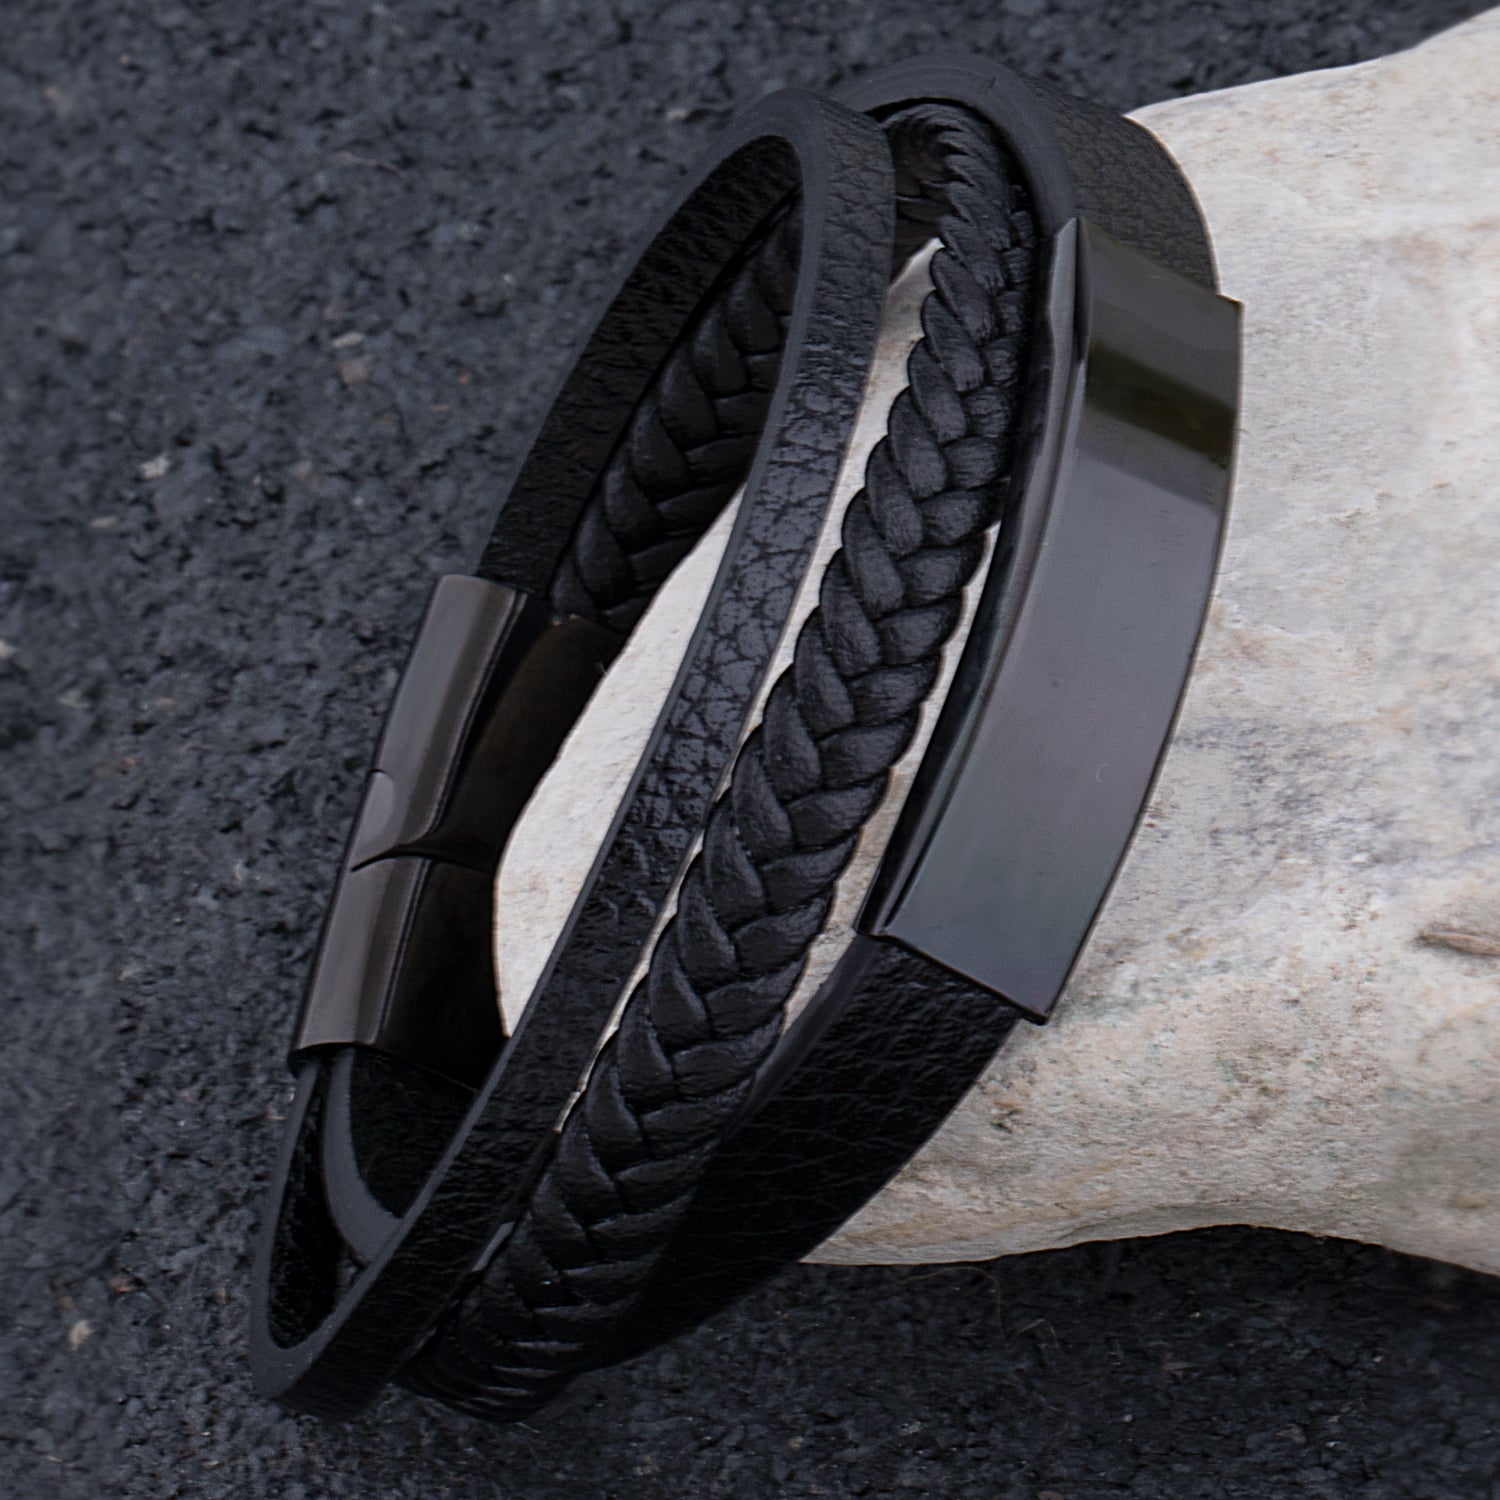 Men's Stainless Steel Black Plated Bracelet 001-610-02657